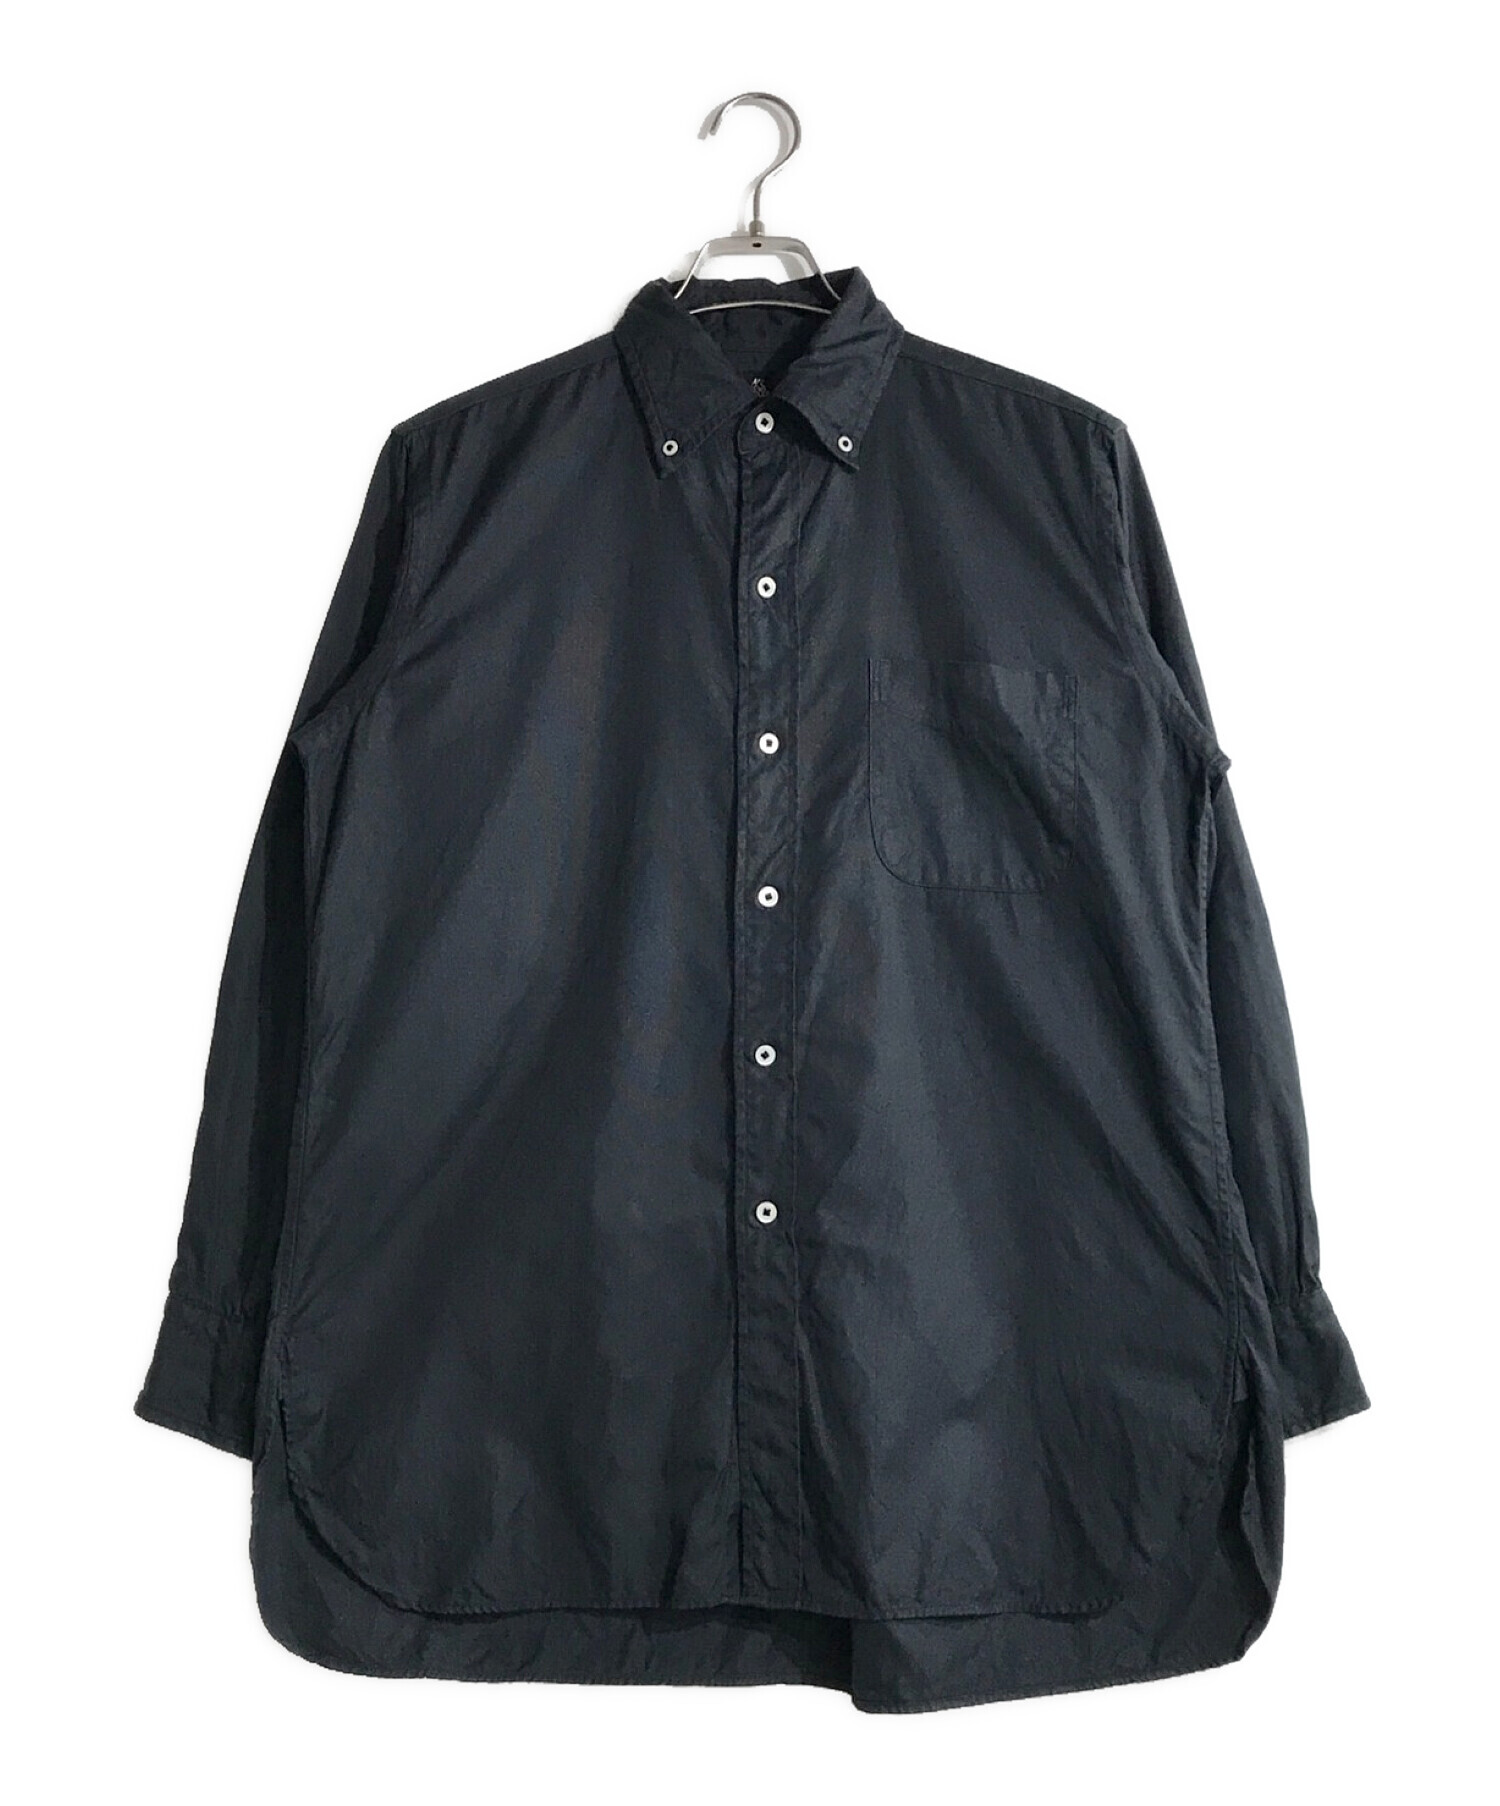 KAPTAIN SUNSHINE (キャプテンサンシャイン) ポロカラーシャツ ブラック サイズ:36